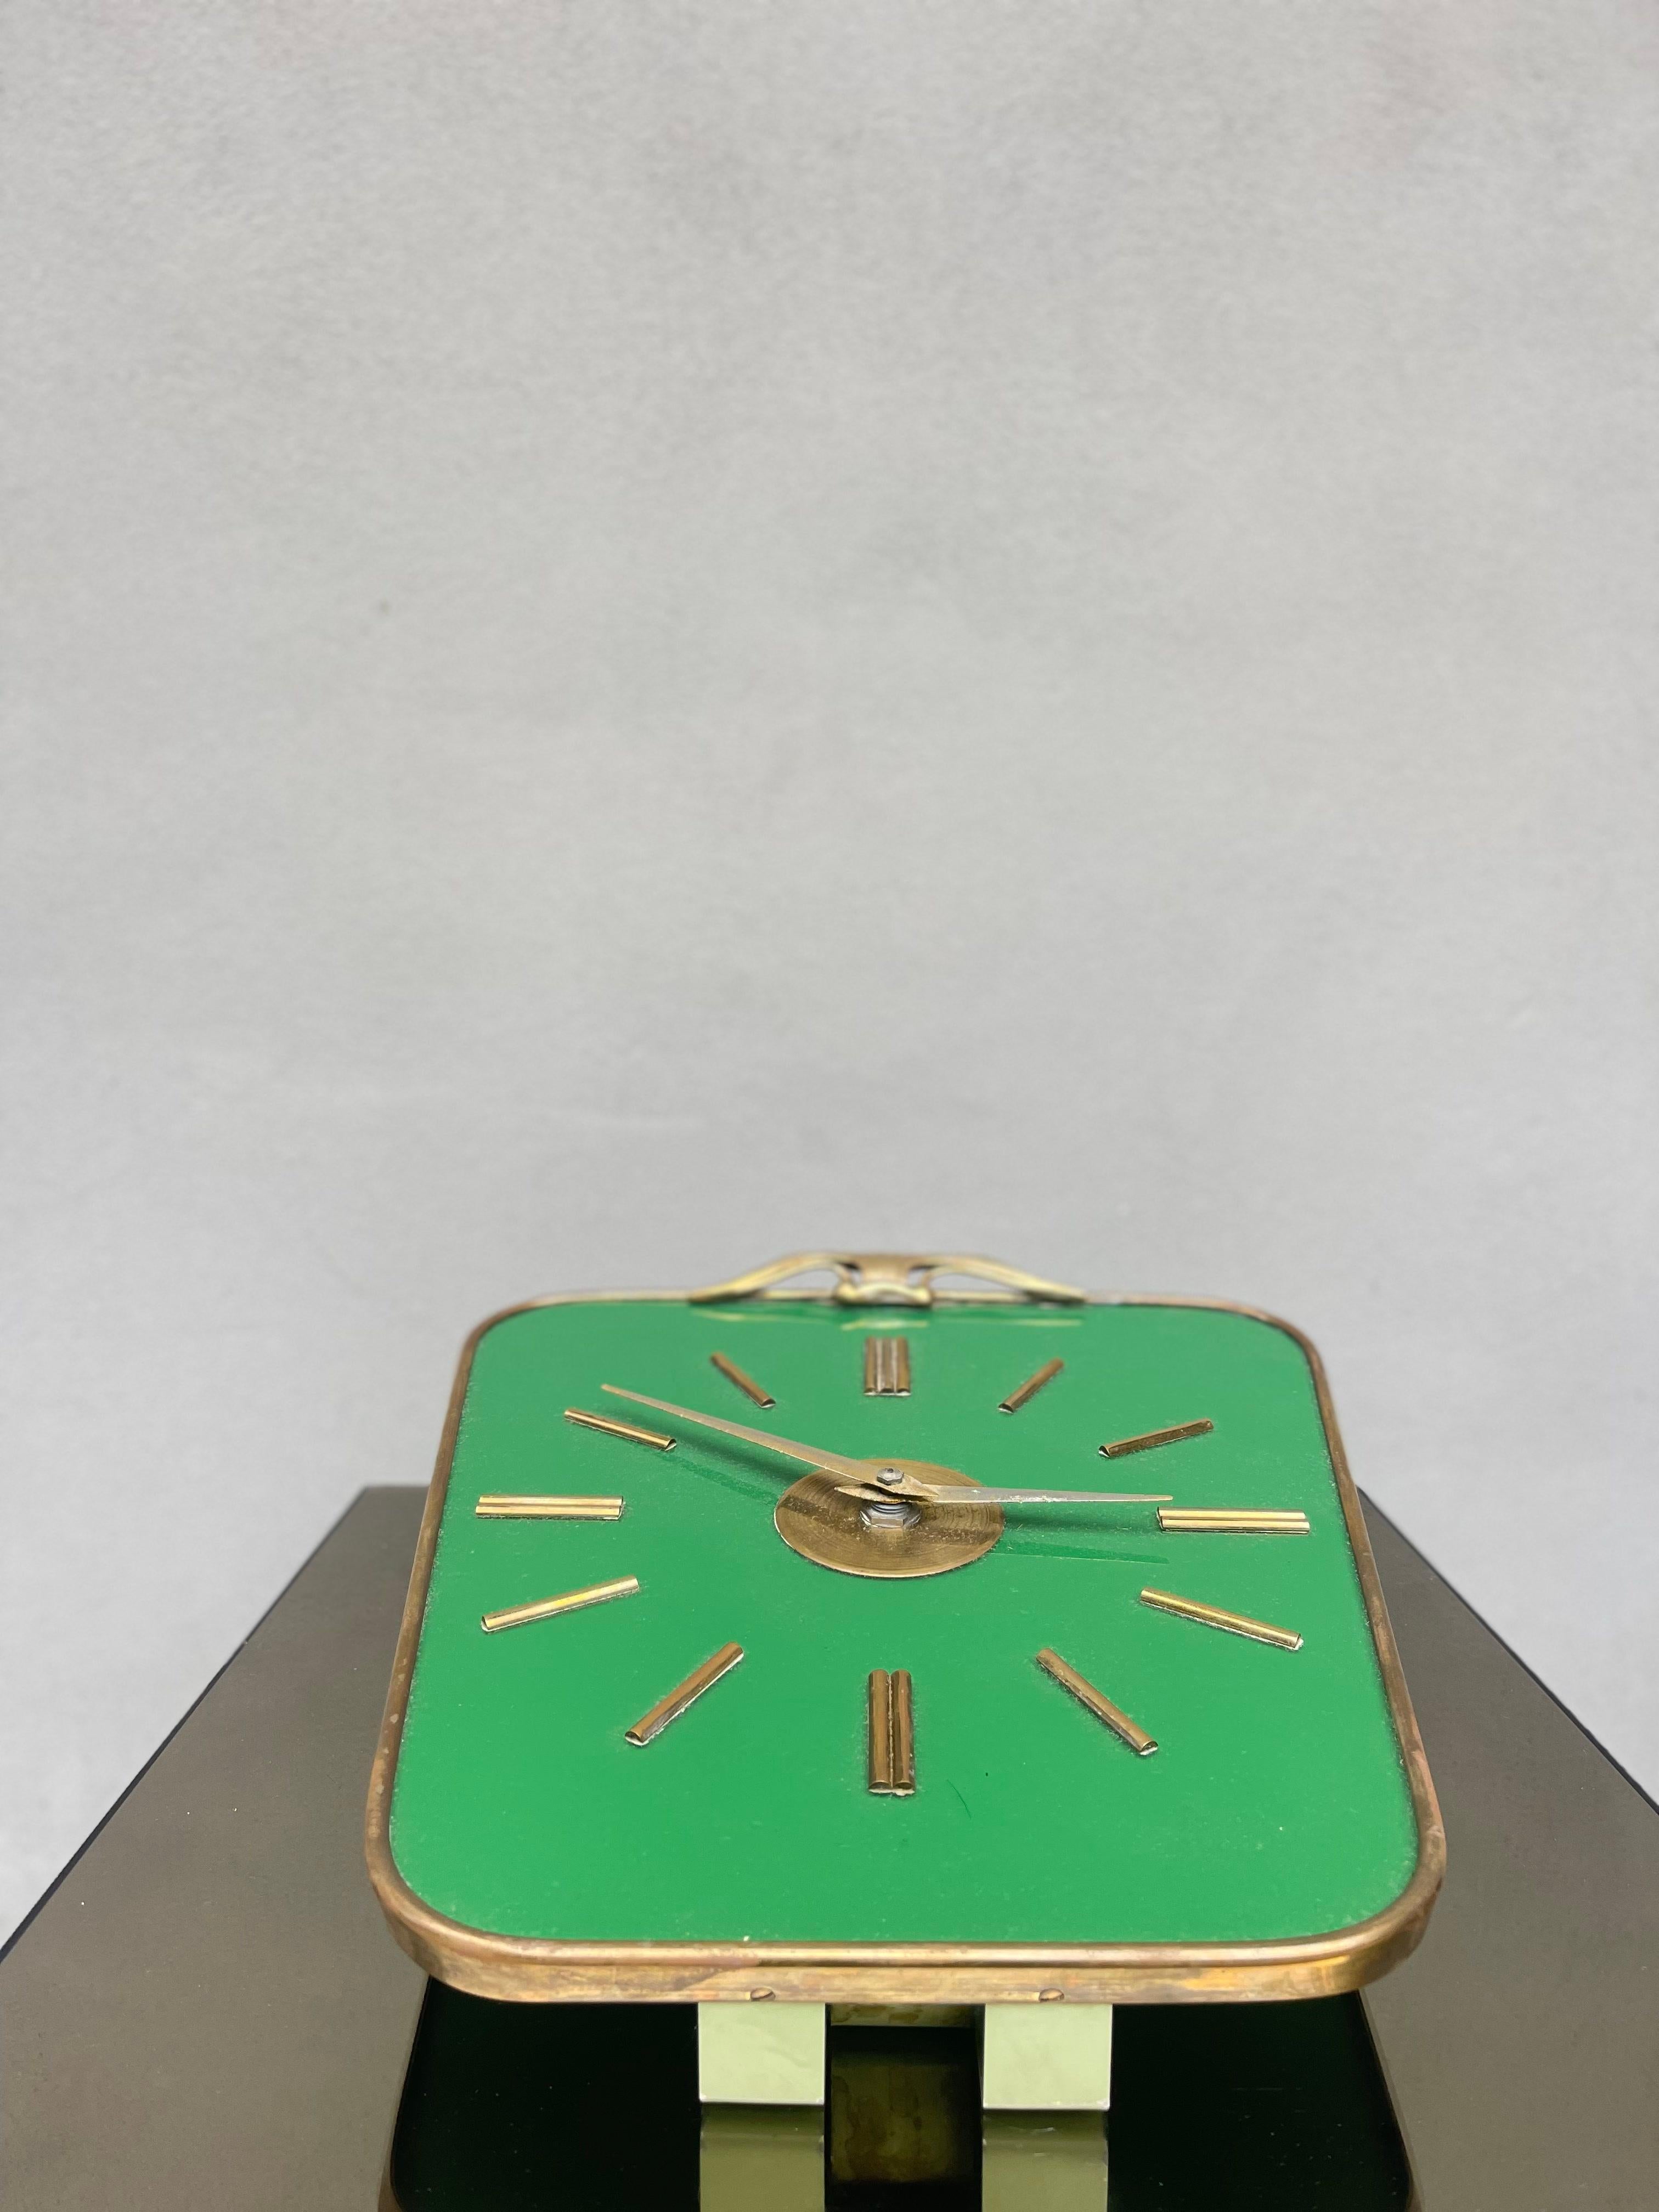 Descrizione : 
orologio da muro Lorenz su sfondo verde lucido con contorno in ottone 

Origini : 
Italia

Periodo di produzione : 
1950

Condizioni : meccanismo da revisionare 

Misure (cm) :
Altezza 29
Larghezza 26
Profondita 5